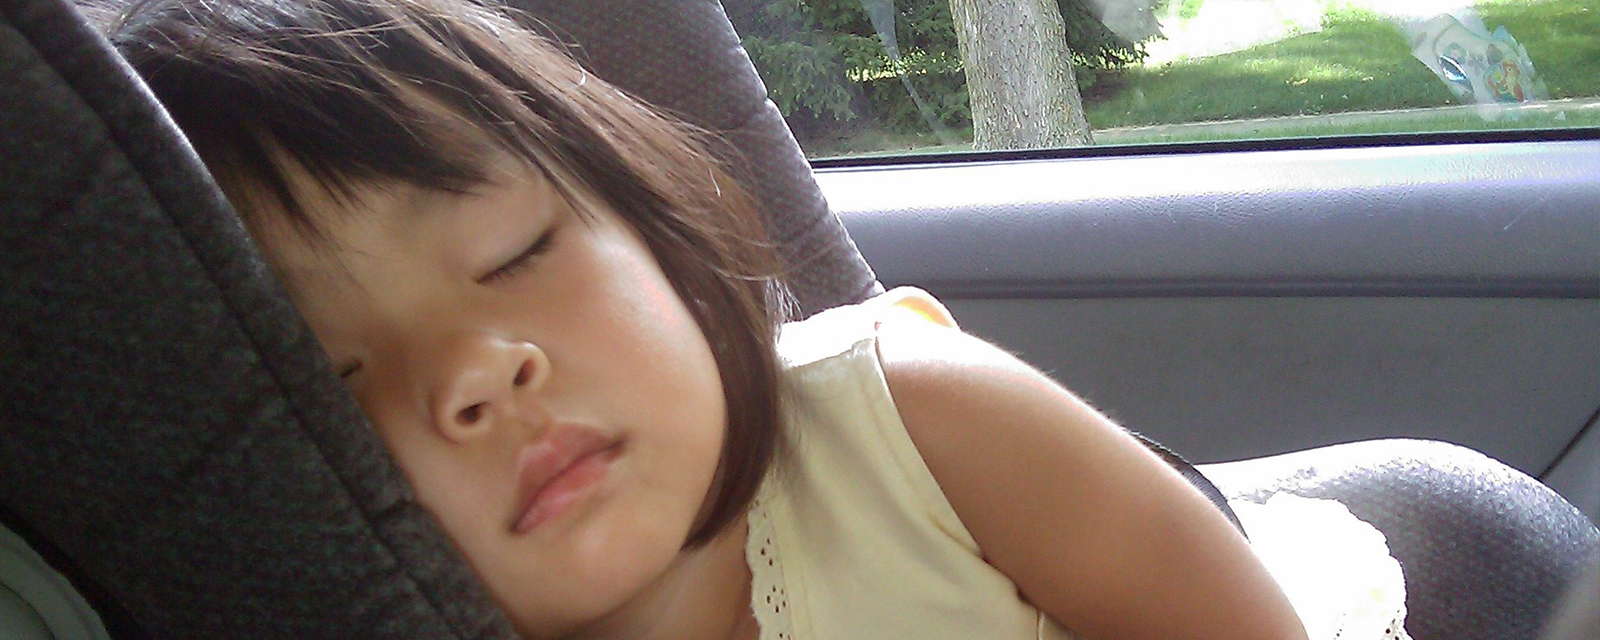 Sujetbild schlafendes Kind im Auto